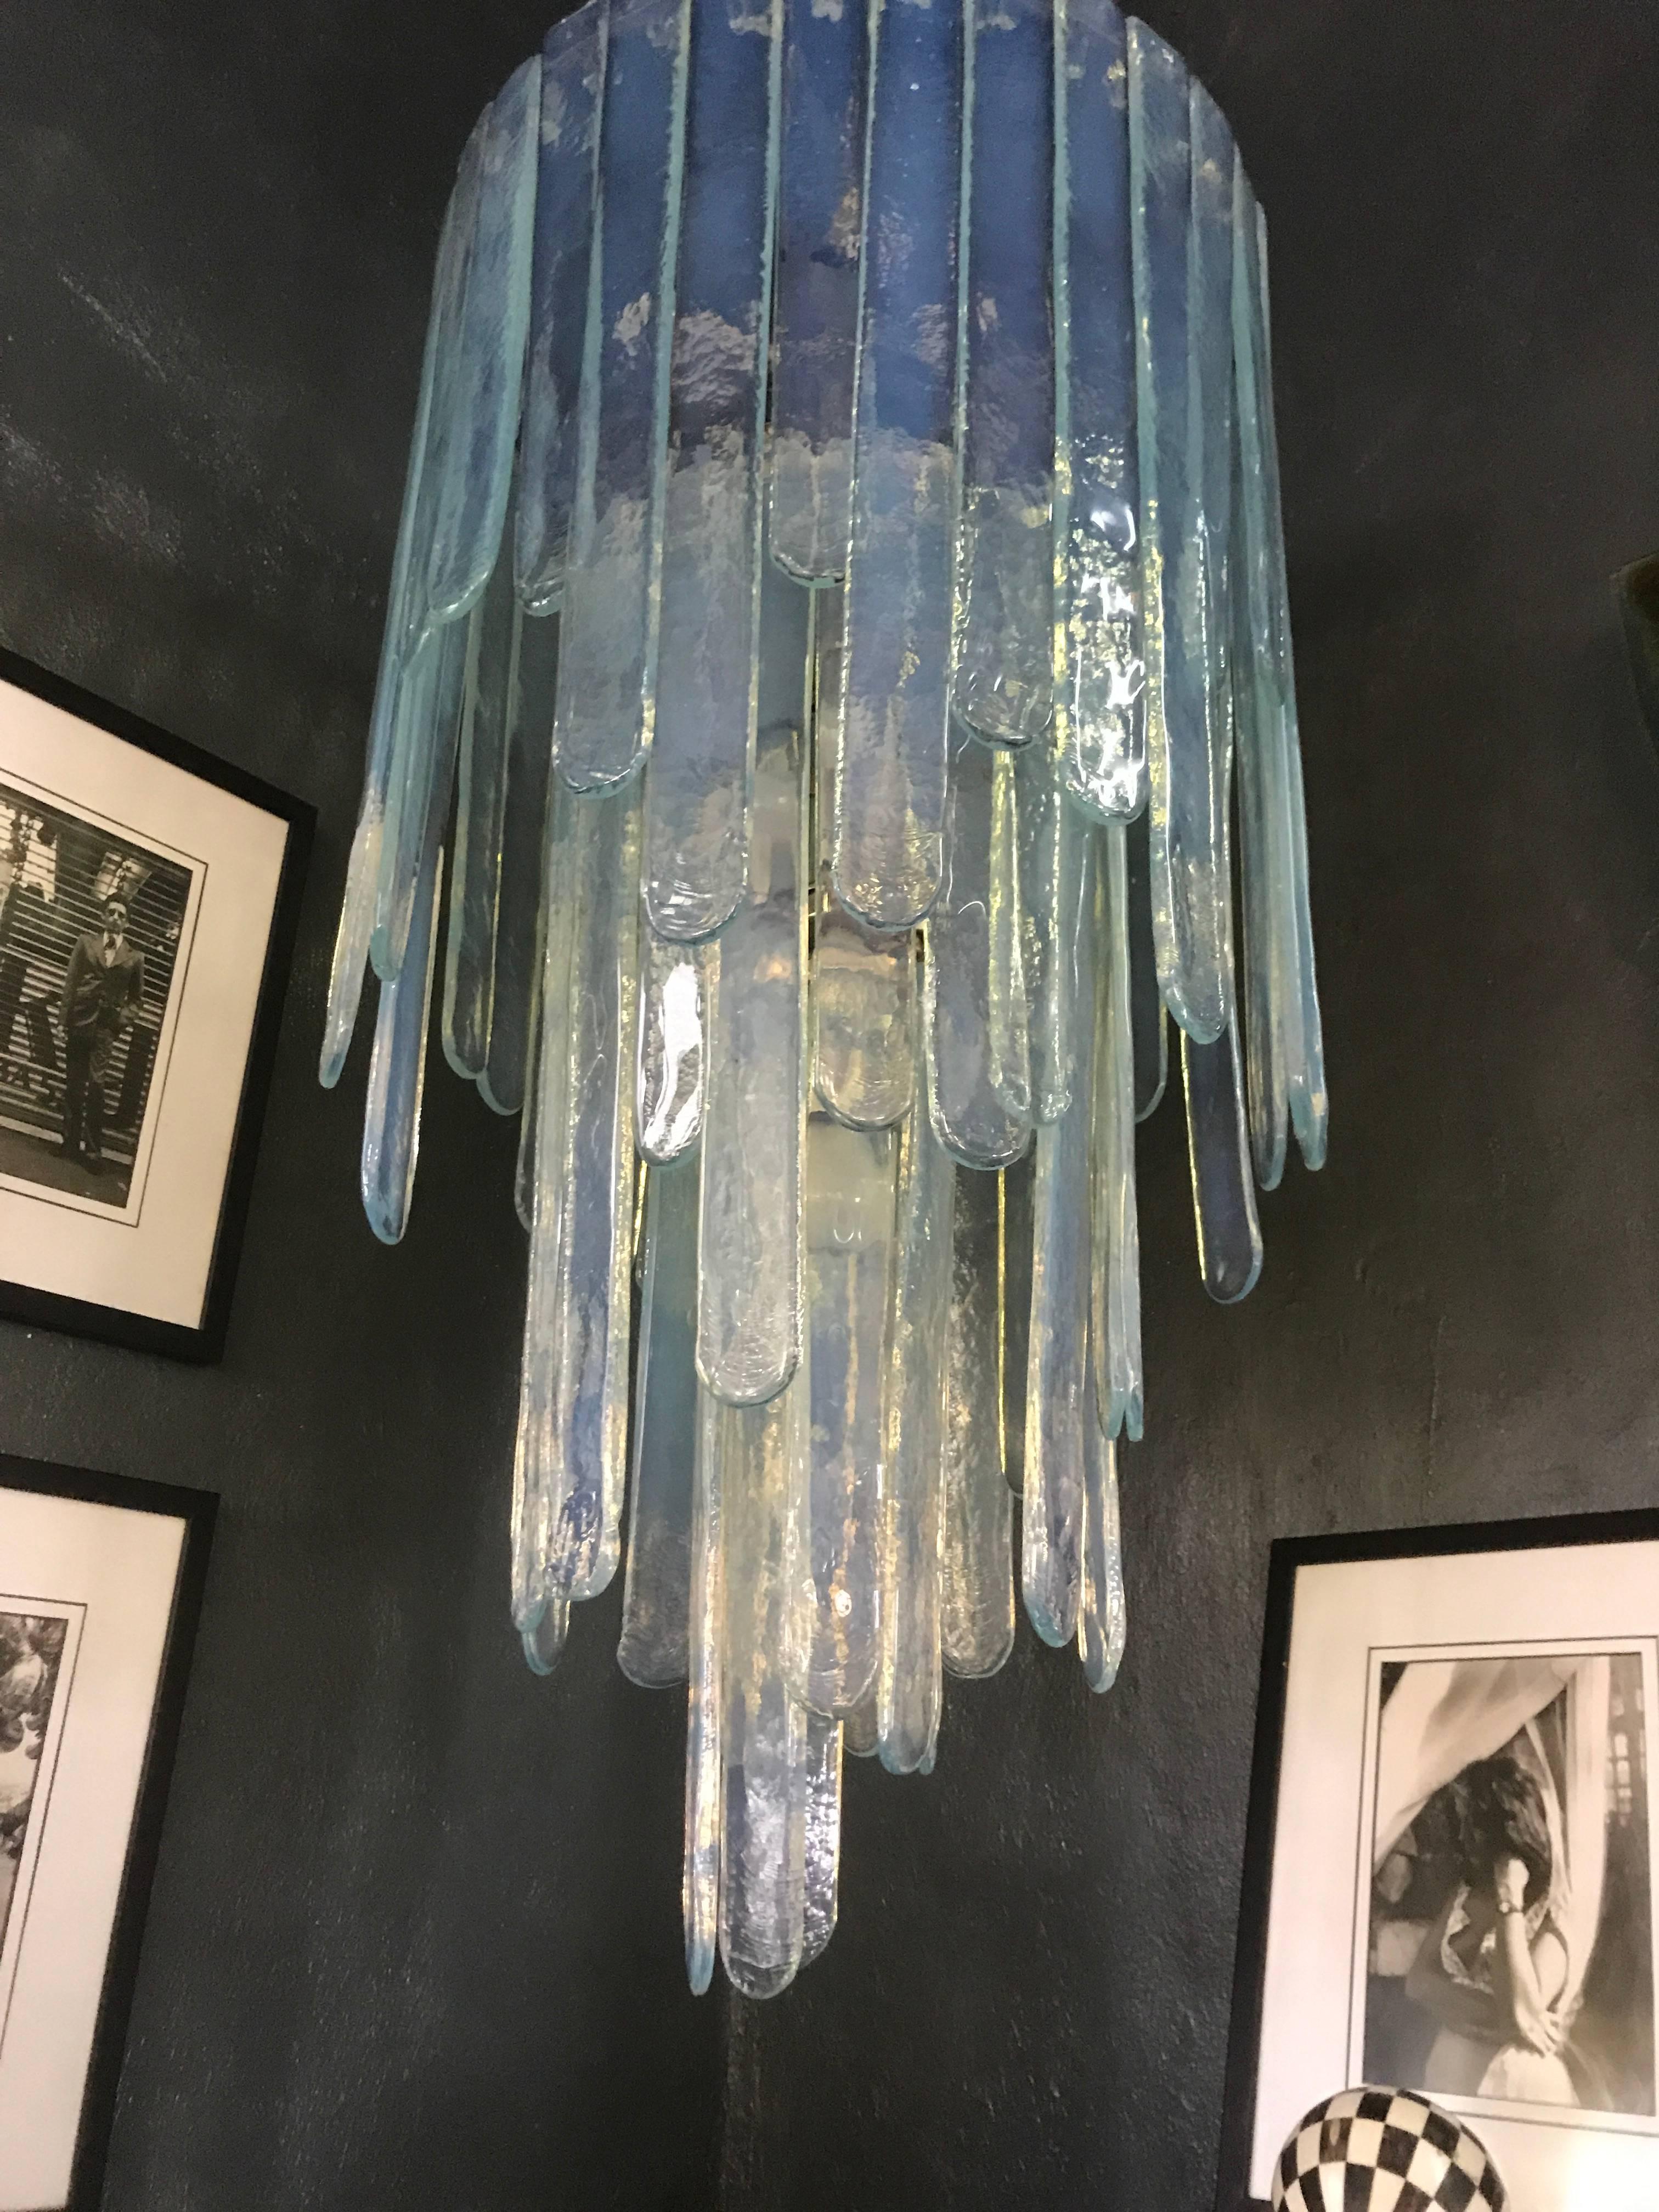 Mid-Century Modern Kronleuchter von Carlo Nason für Mazzega in einem blauen, opalisierenden Farbton, bestehend aus drei Stufen von Glaslamellen. Dieser Kronleuchter ist vollständig, da kein einziger Zentimeter an der Stelle frei ist, an der die